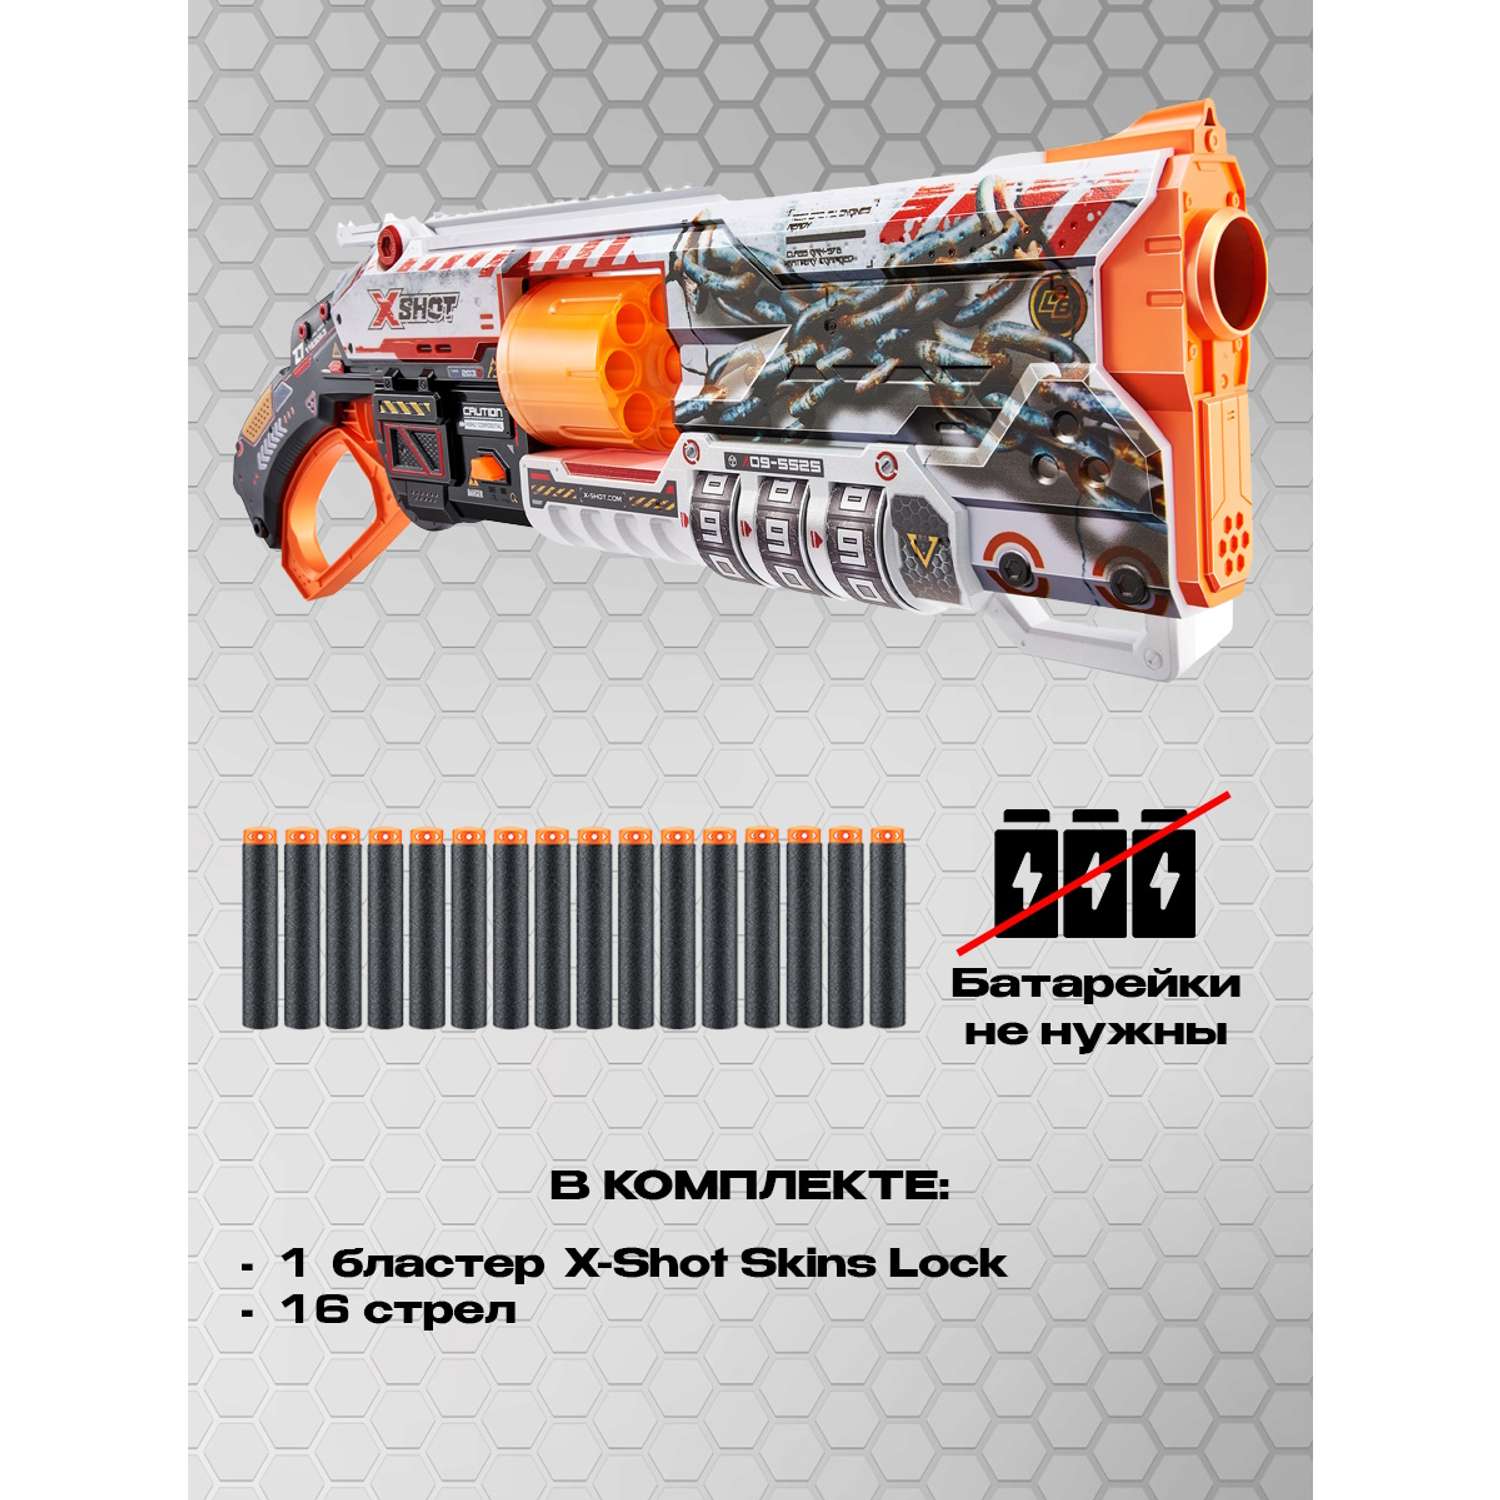 Набор игровой X-Shot Skins Lock Gun 36606 - фото 3